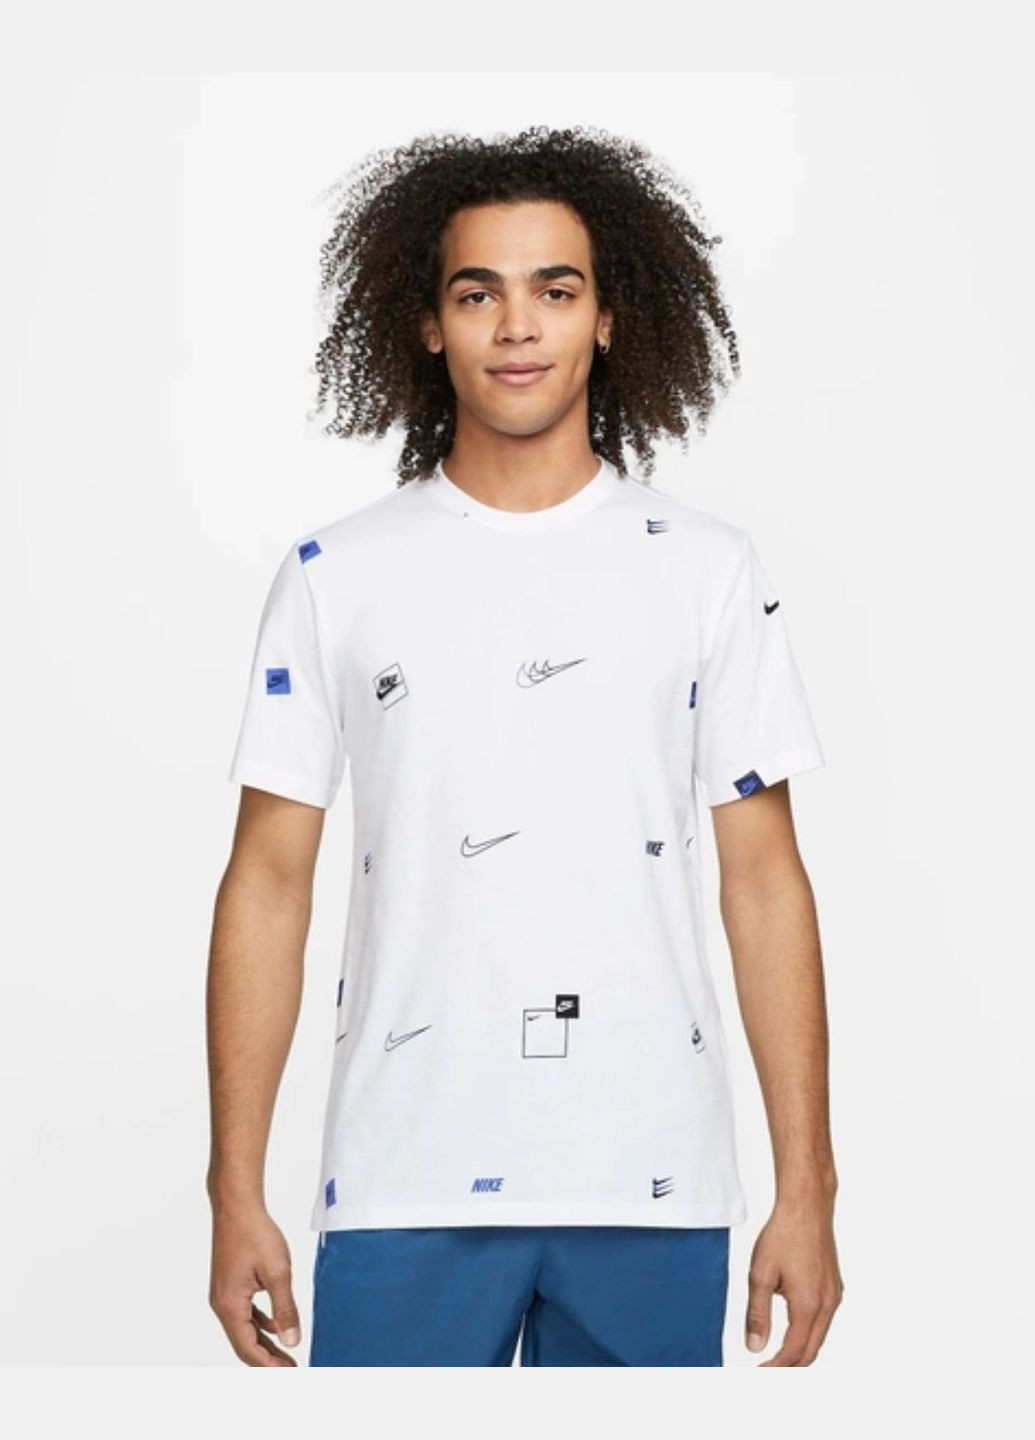 Белая мужская футболка 12 mo logo aop tee dn5246-100 белая Nike